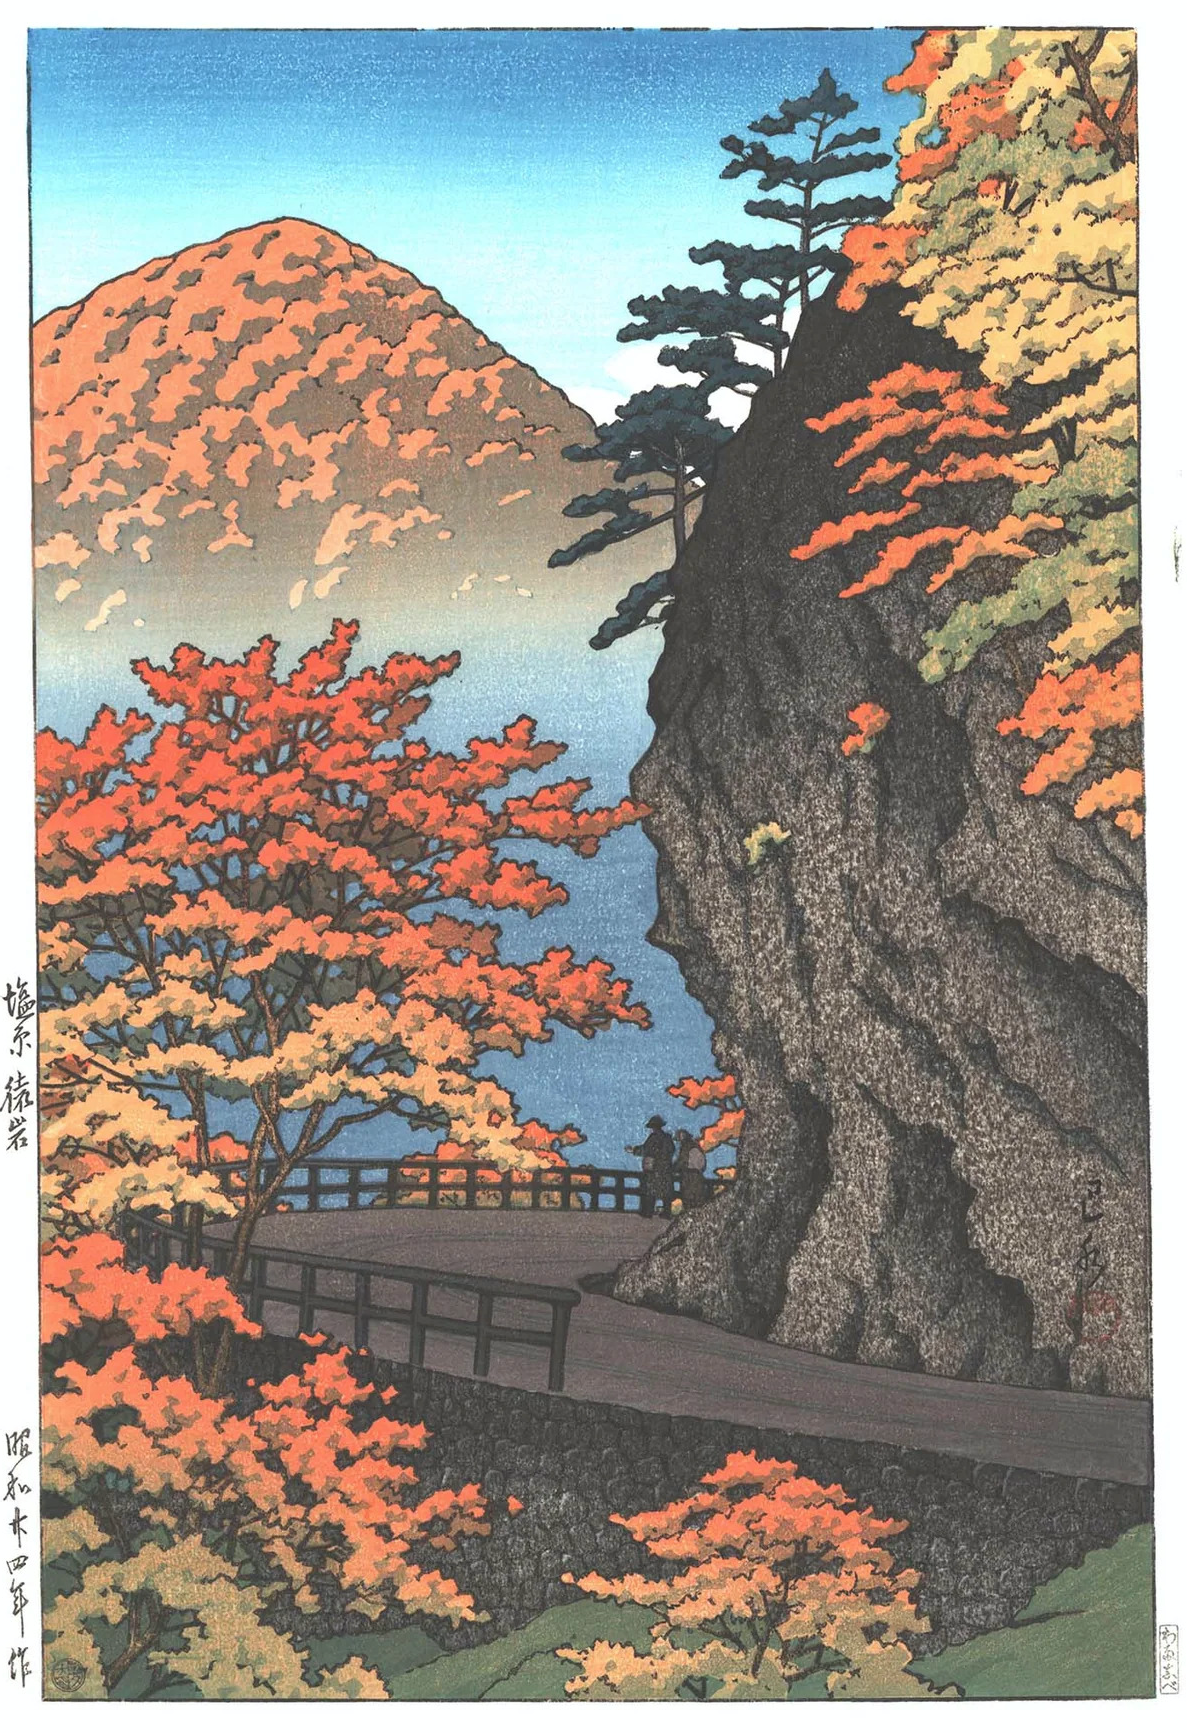 鹽原，猿井巖的秋天 by Hasui Kawase - 1949 - 38 x 24.4 cm 